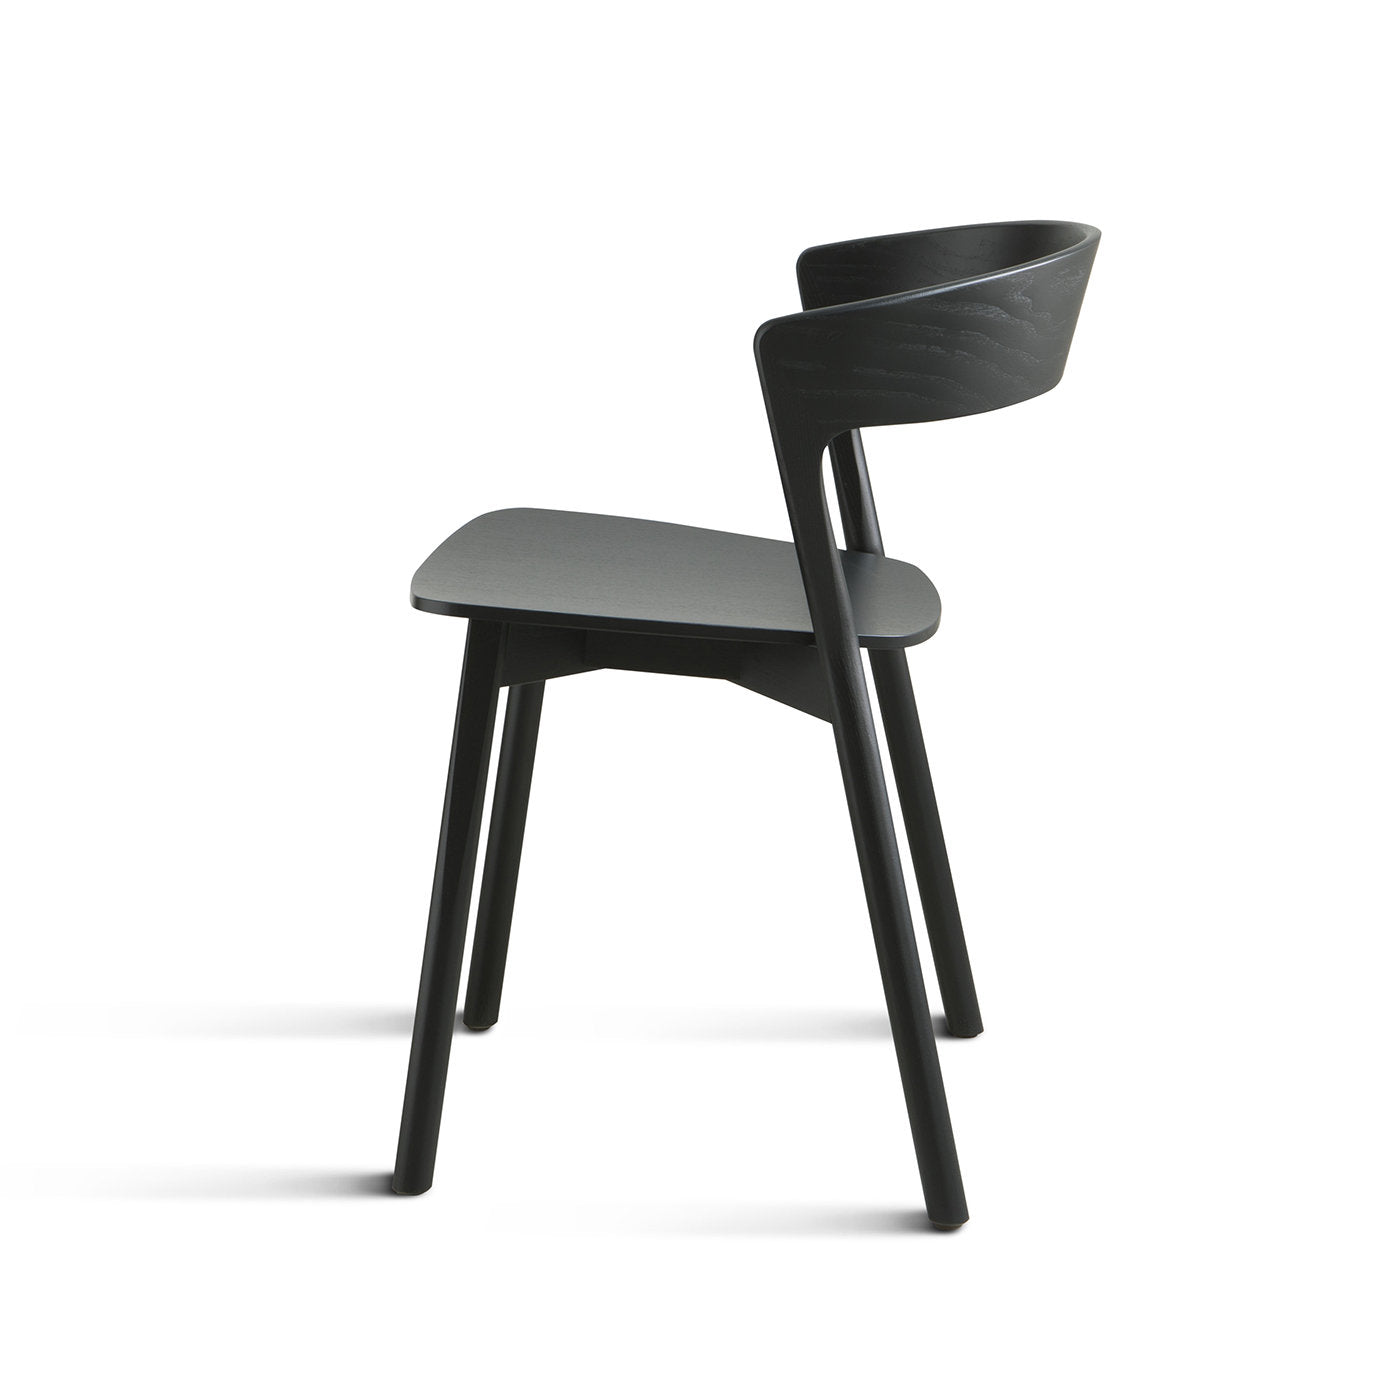 Edith Le Black Chair by Massimo Broglio - Alternative view 2